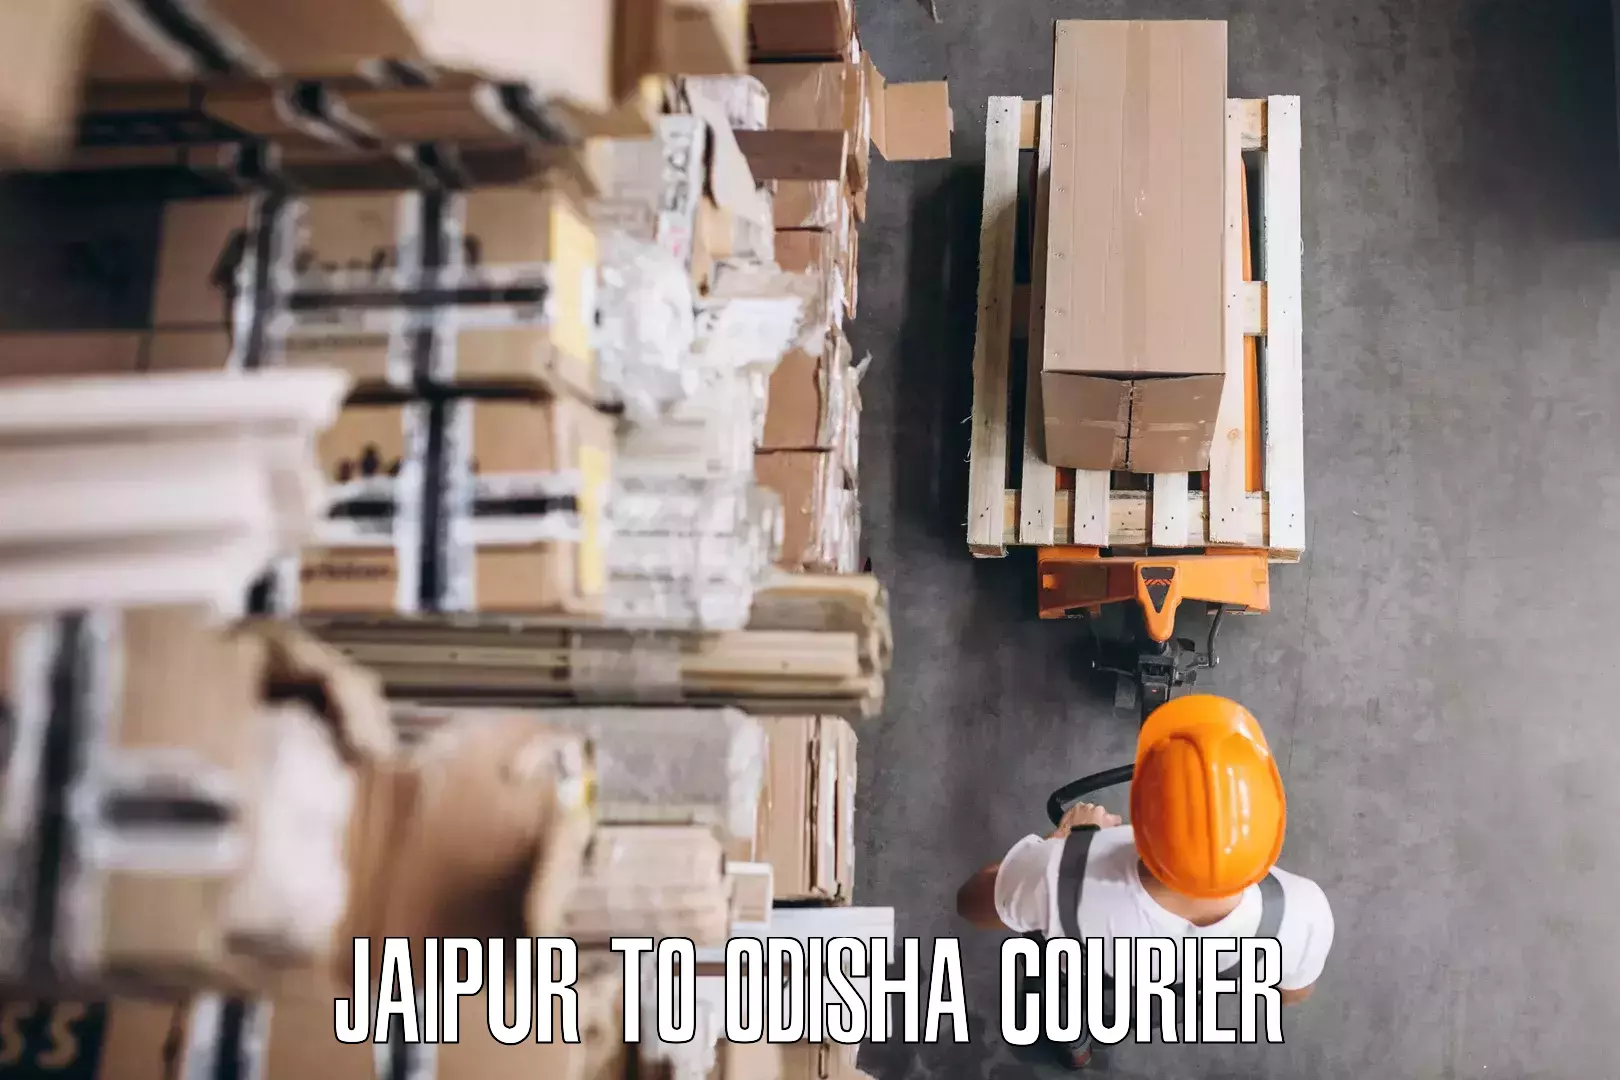 Furniture moving experts Jaipur to Ukhunda